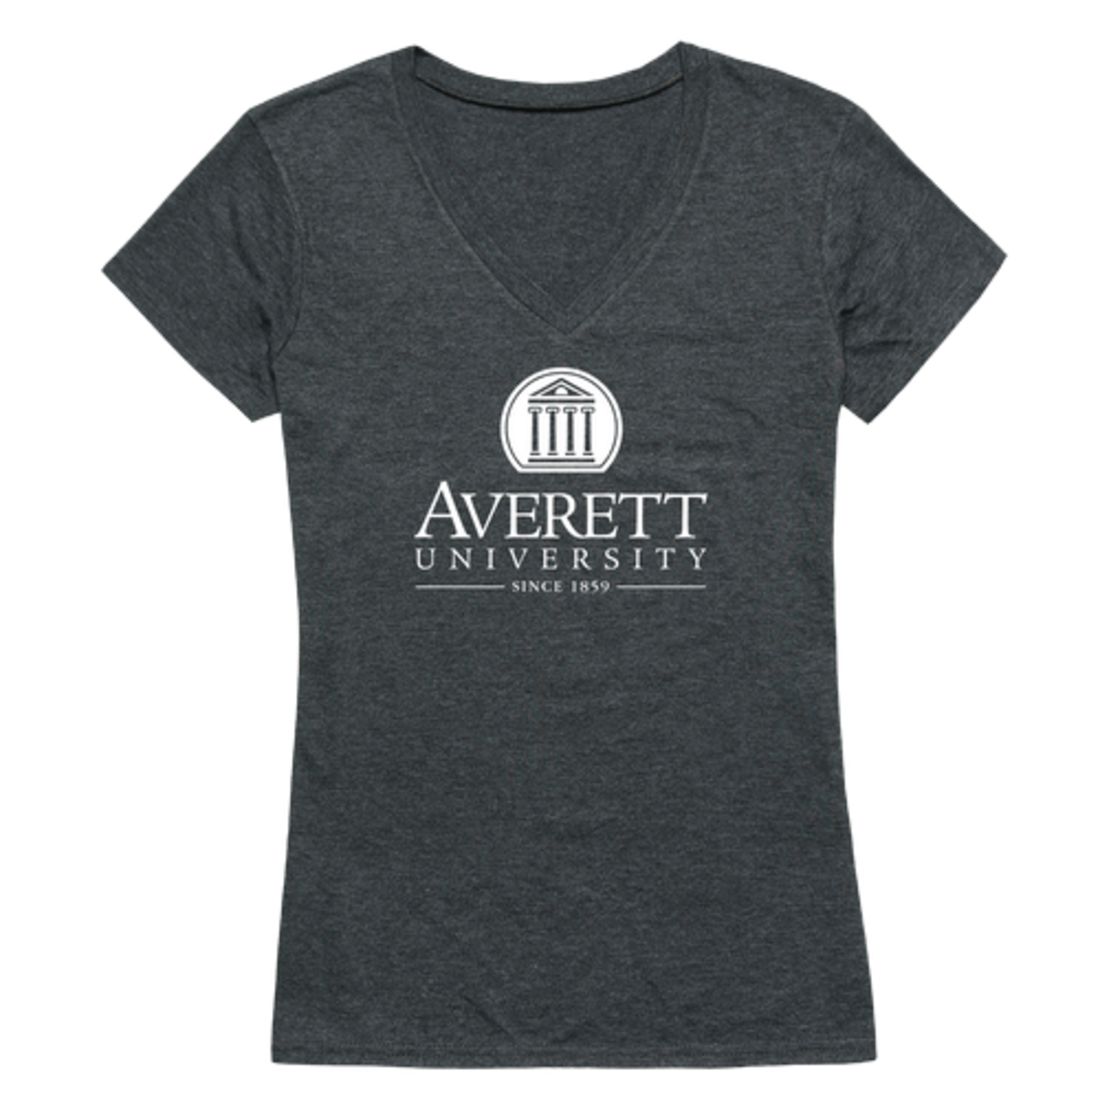 Averett University Averett Cougars Womens Institutional T-Shirt Tee